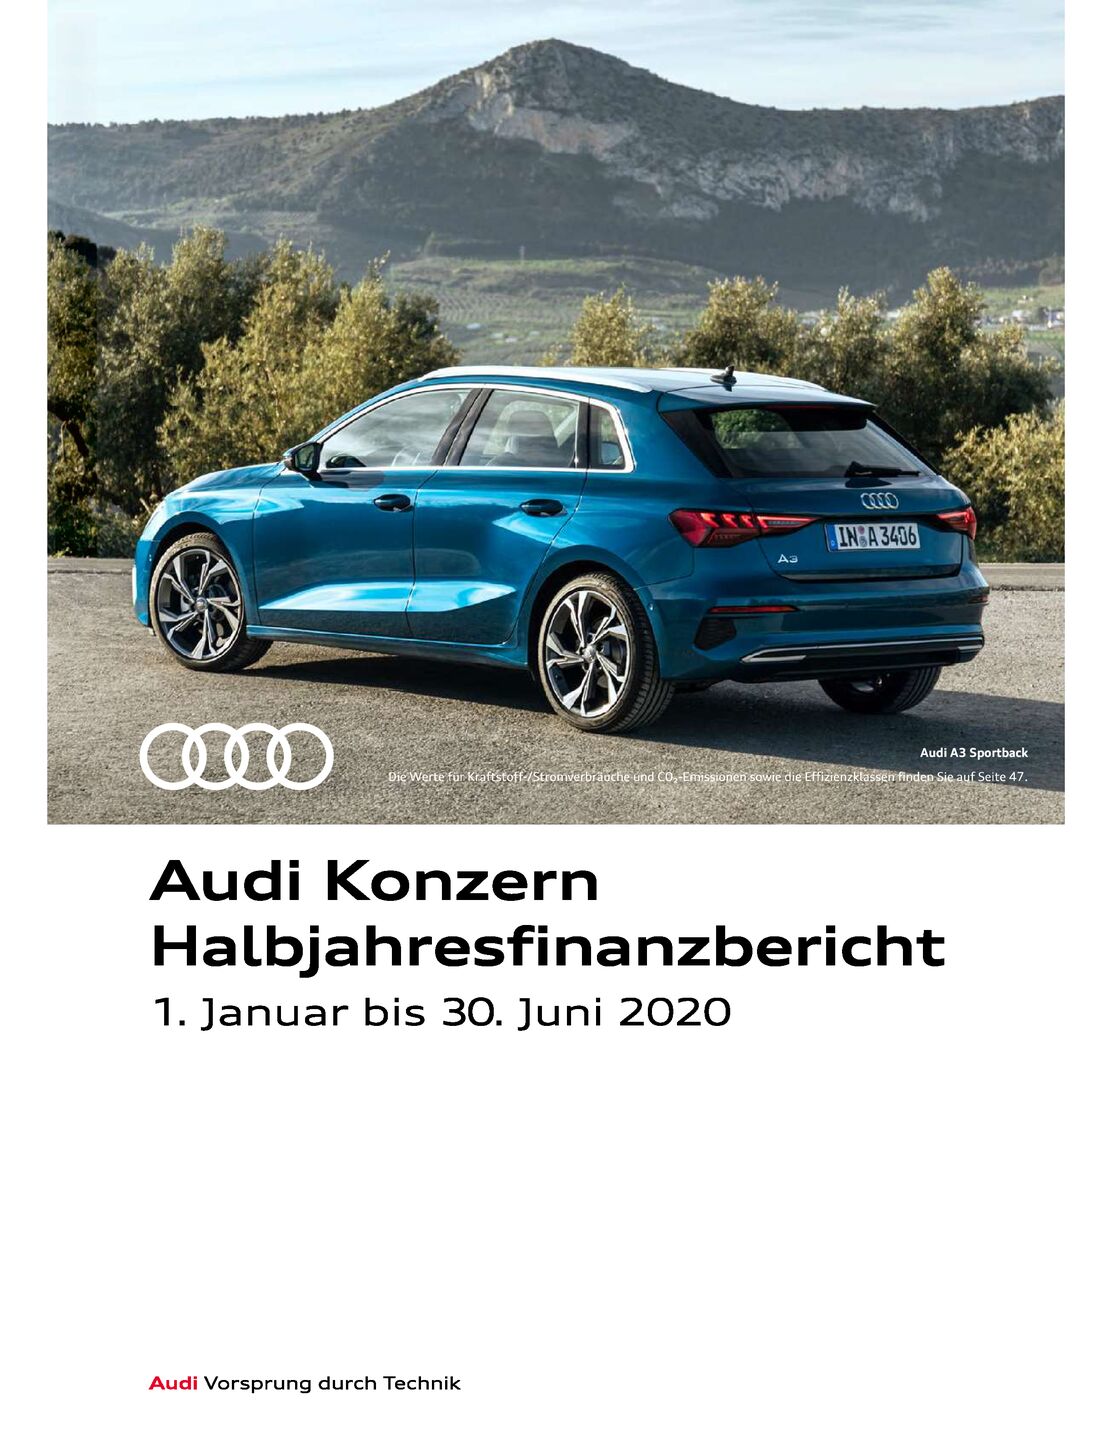 Audi Konzern Halbjahresfinanzbericht 2020